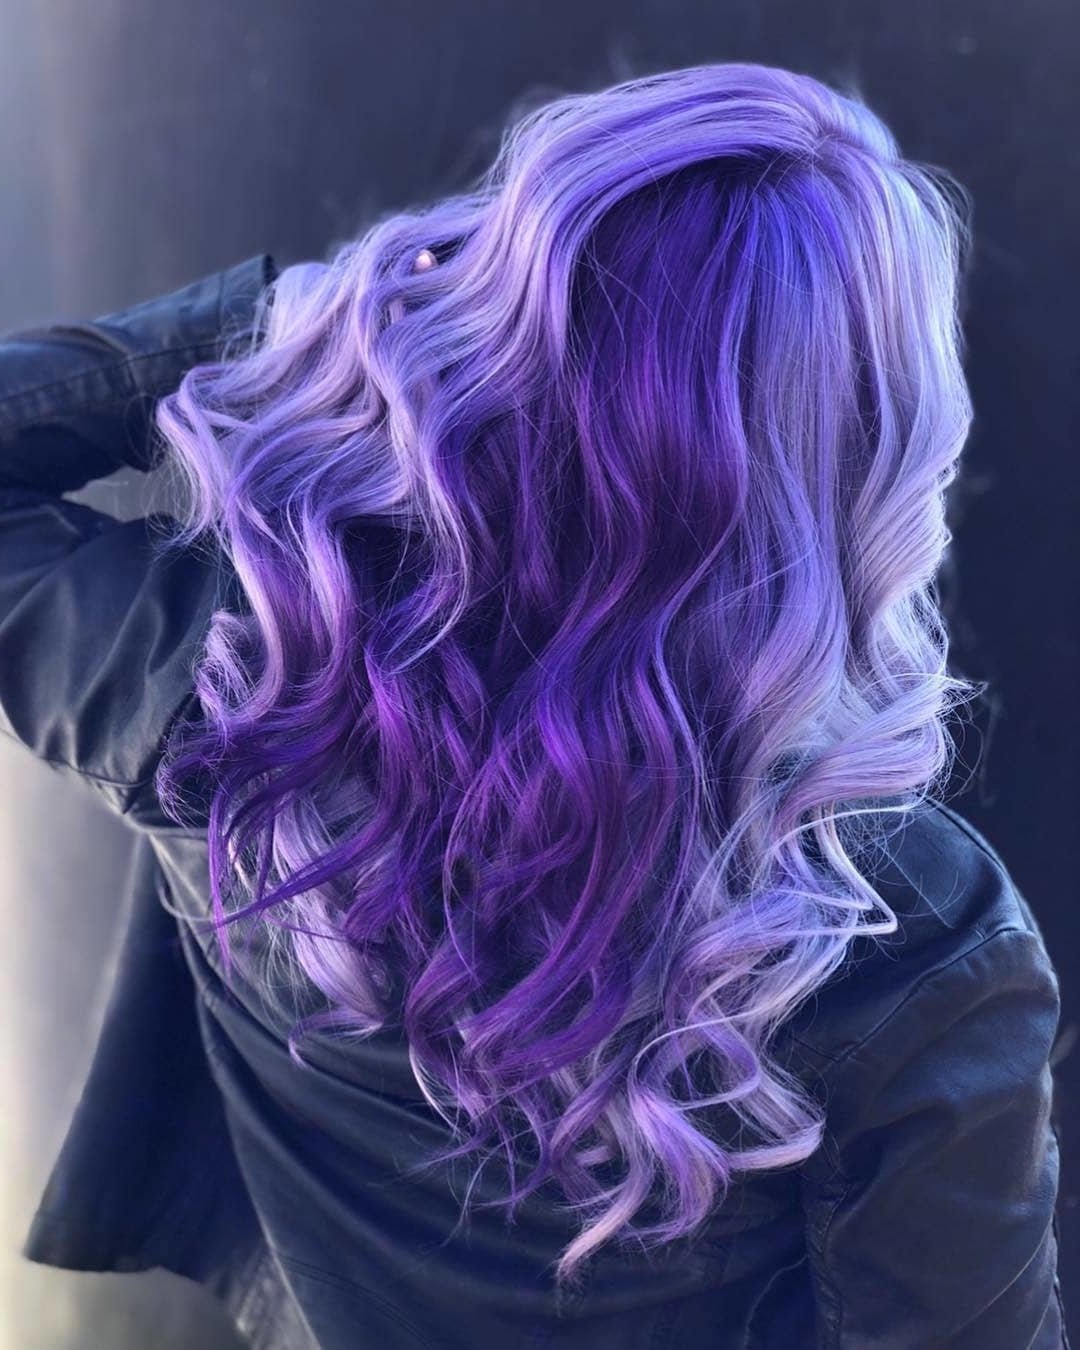 Фиолетовая маска для русых волос